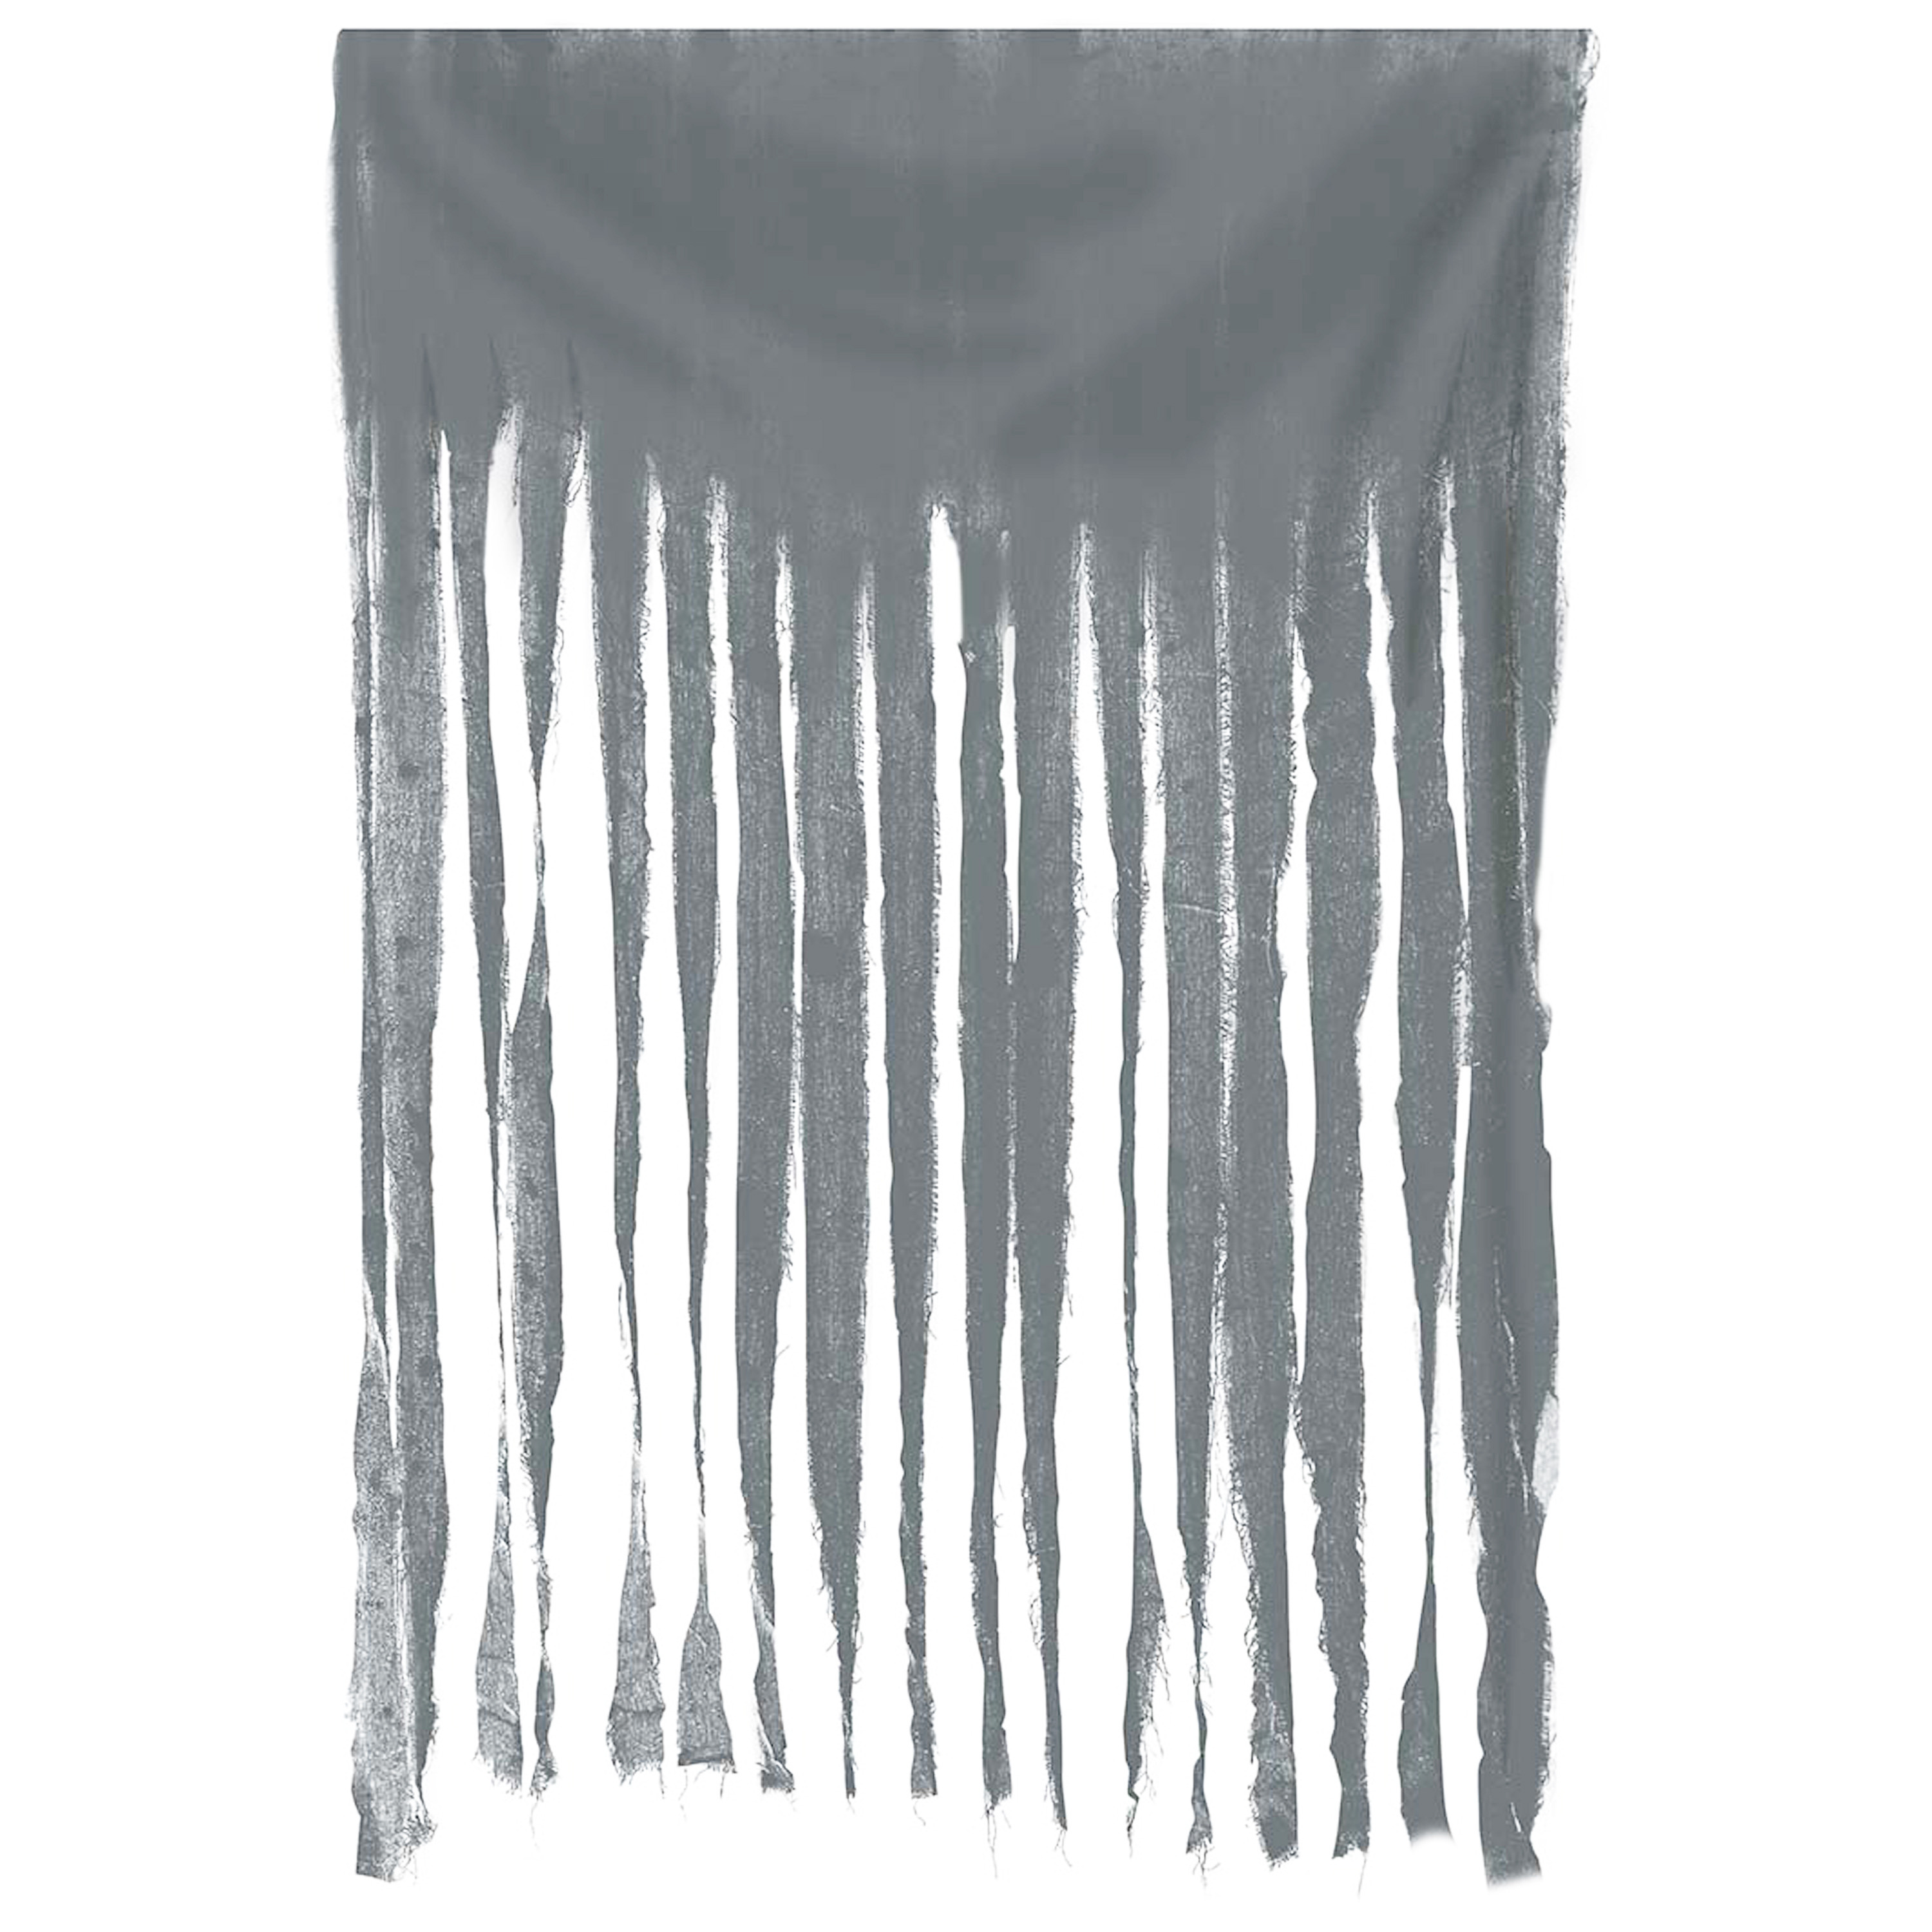 Horror-halloween deco wand-muur-plafond gordijn stof grijs 100 x 200 cm griezel uitstraling